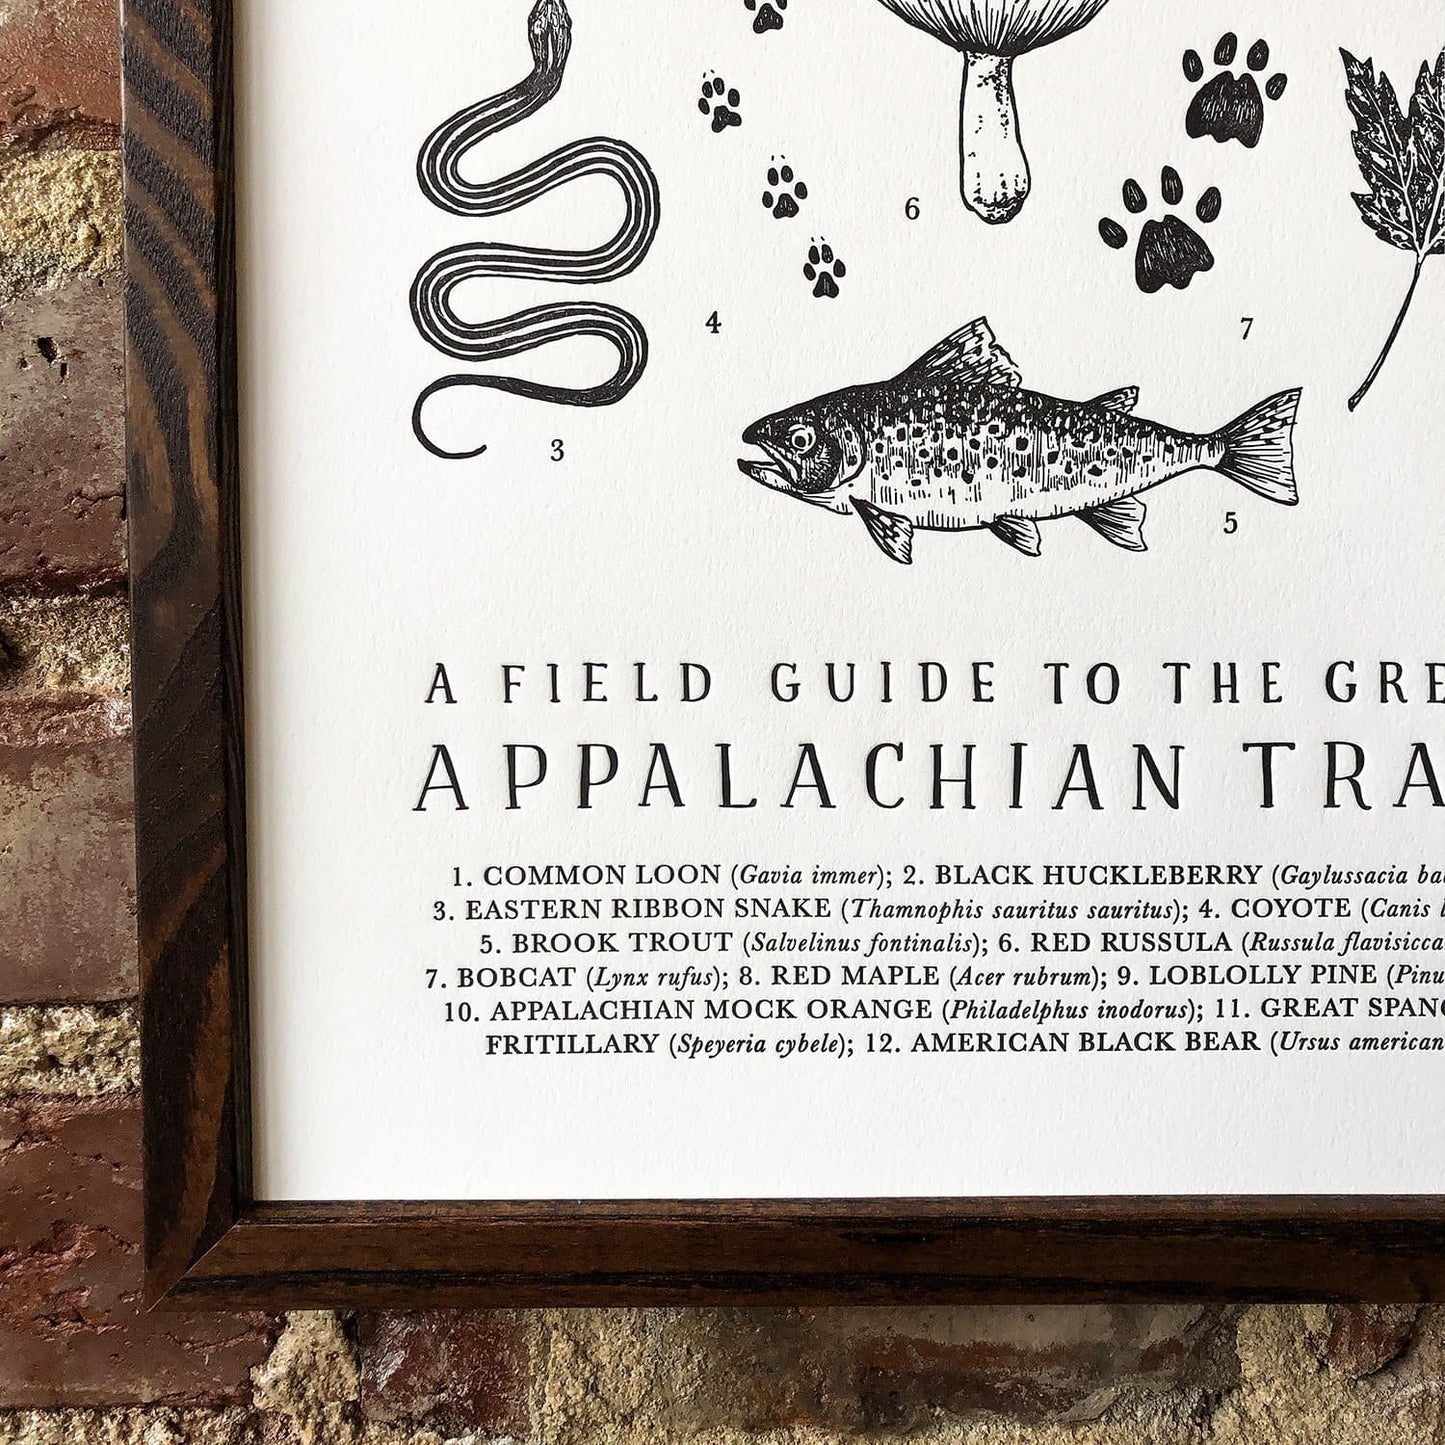 Appalachian Trail Field Guide Letterpress Print